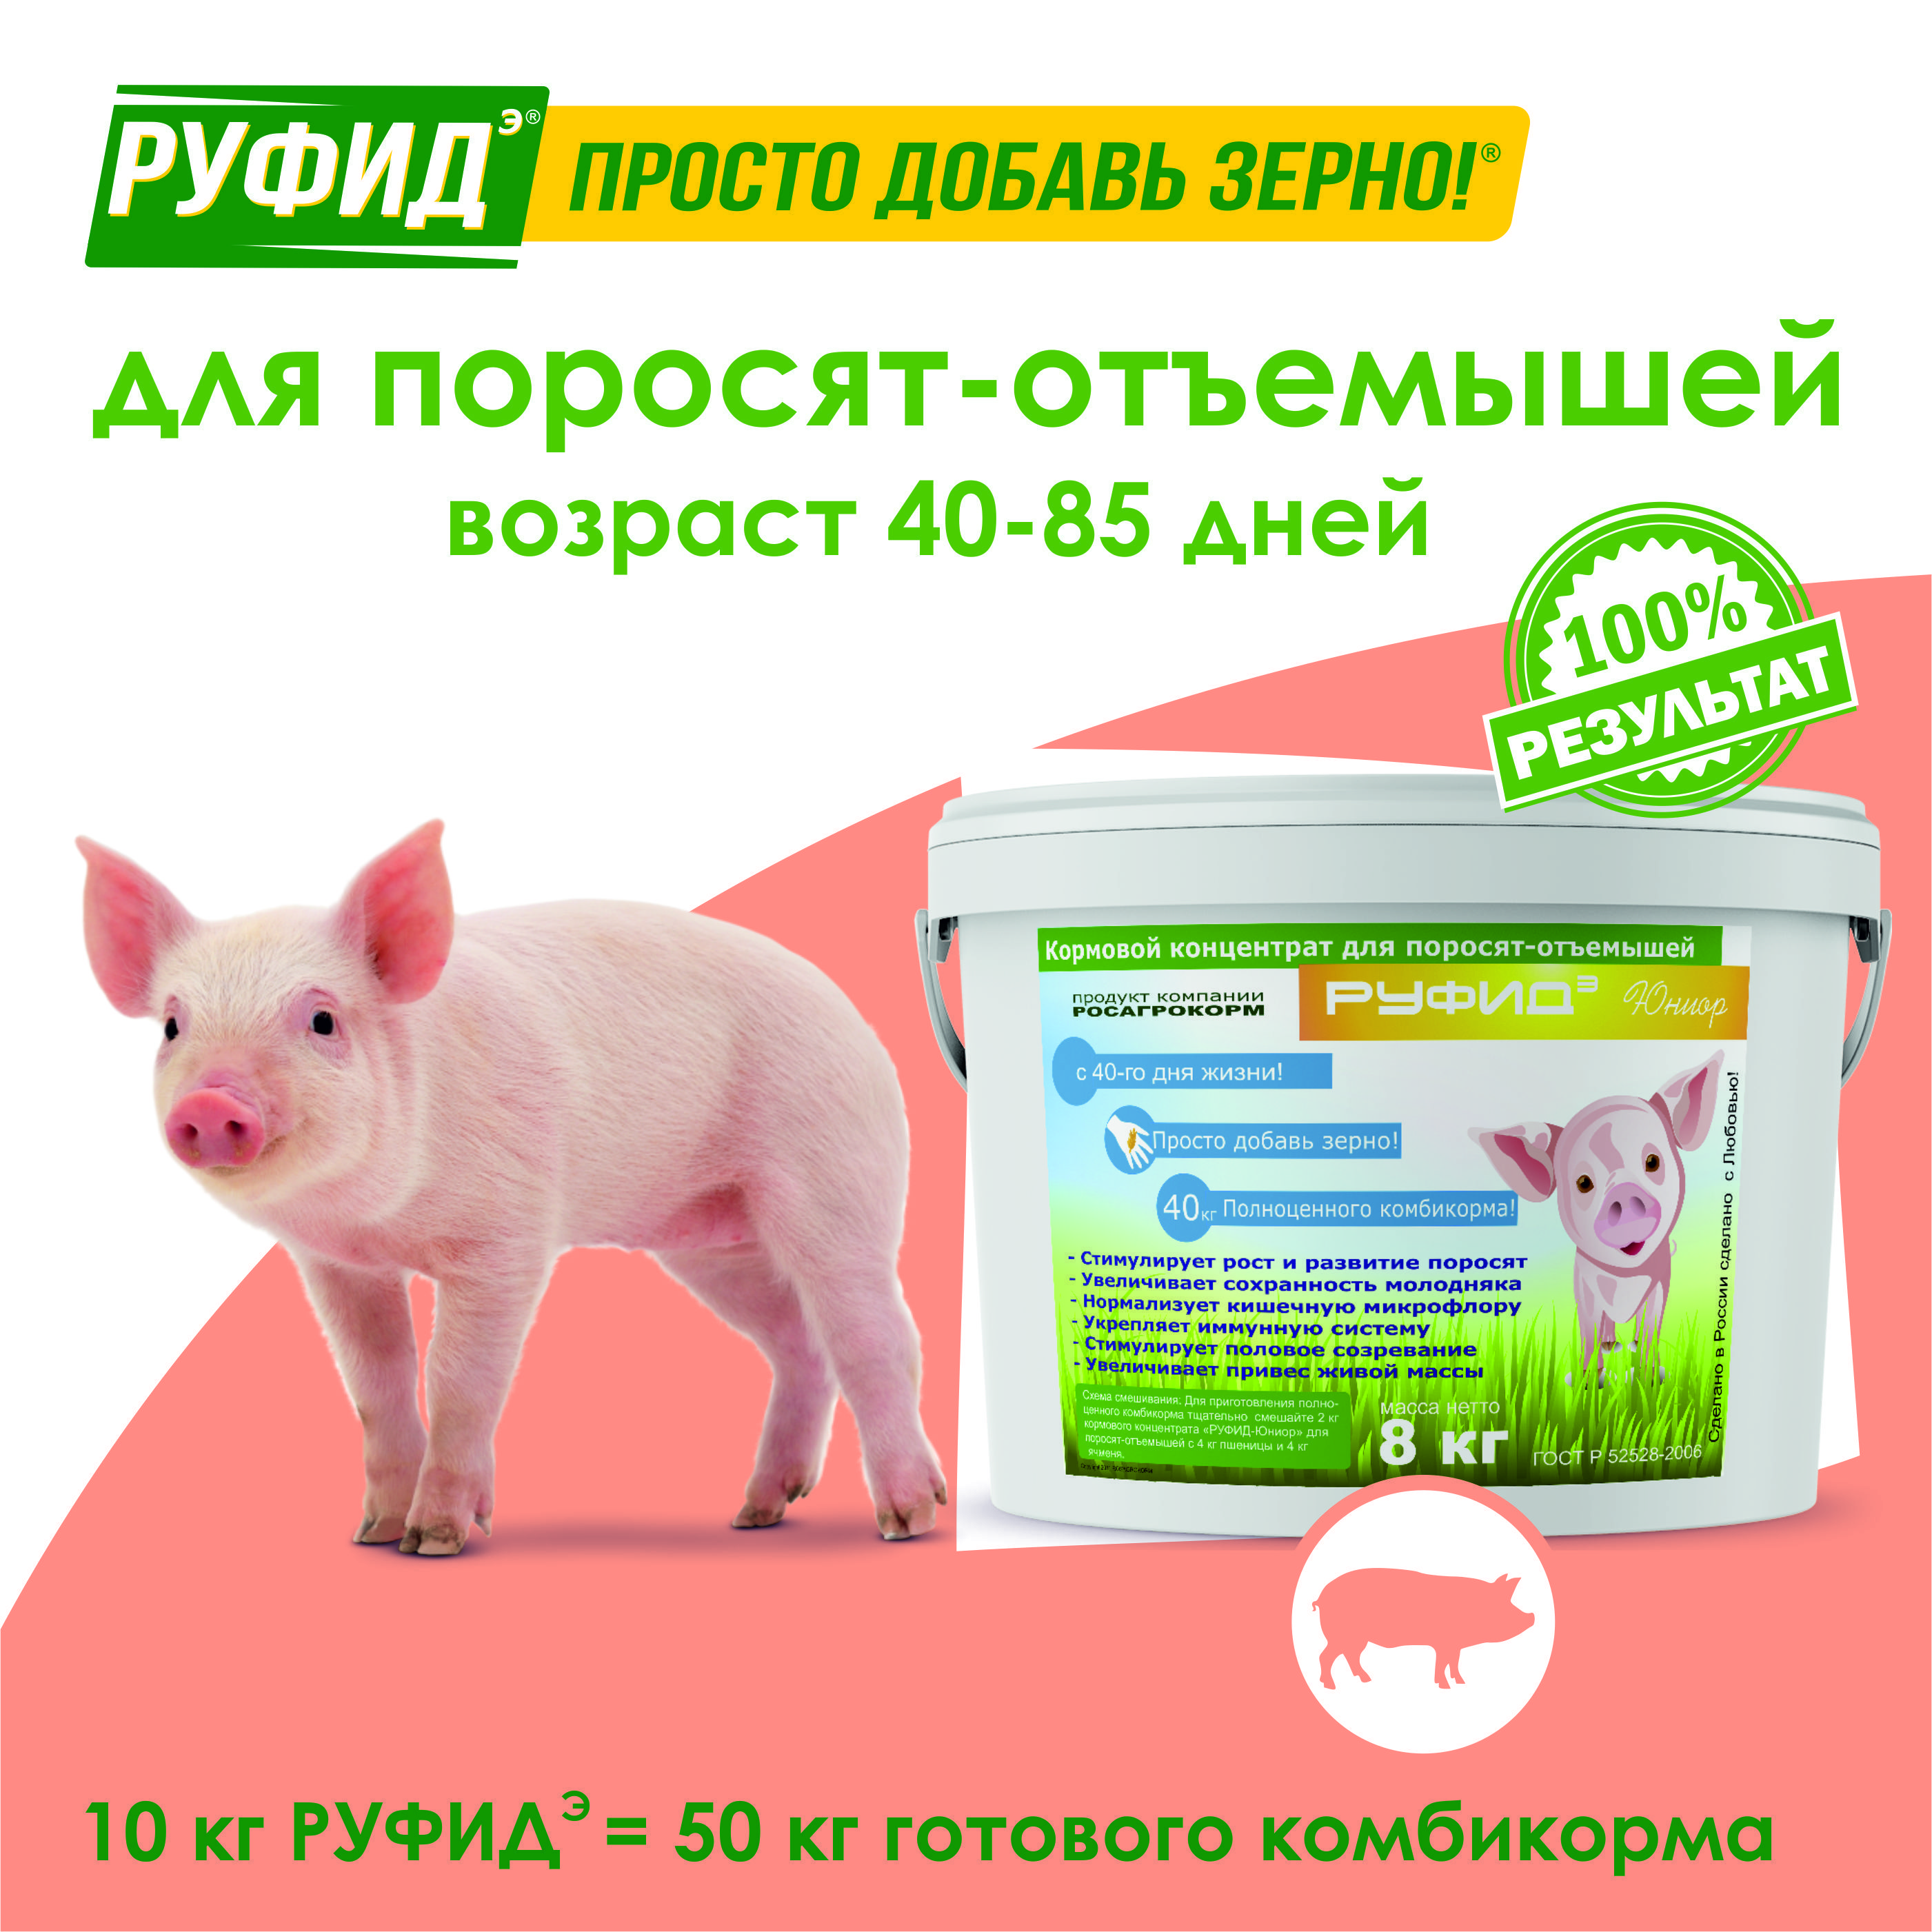 Состав комбикорма для свиней и поросят: как сделать своими руками по рецептам